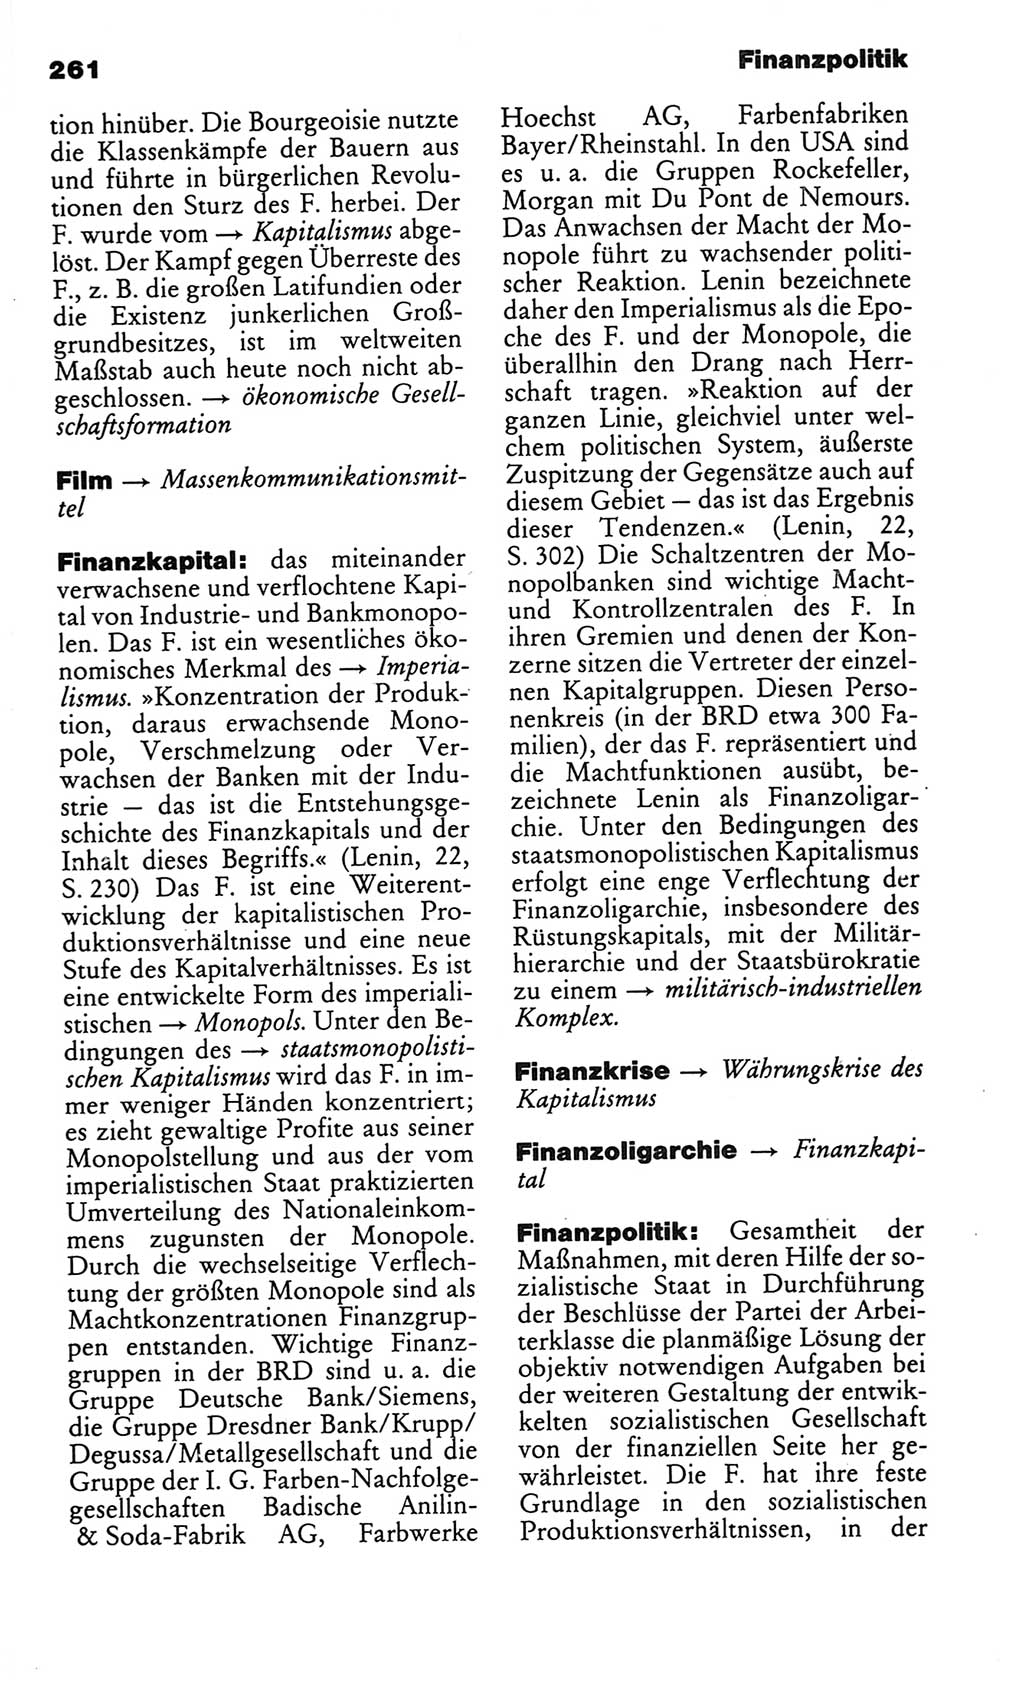 Kleines politisches Wörterbuch [Deutsche Demokratische Republik (DDR)] 1986, Seite 261 (Kl. pol. Wb. DDR 1986, S. 261)